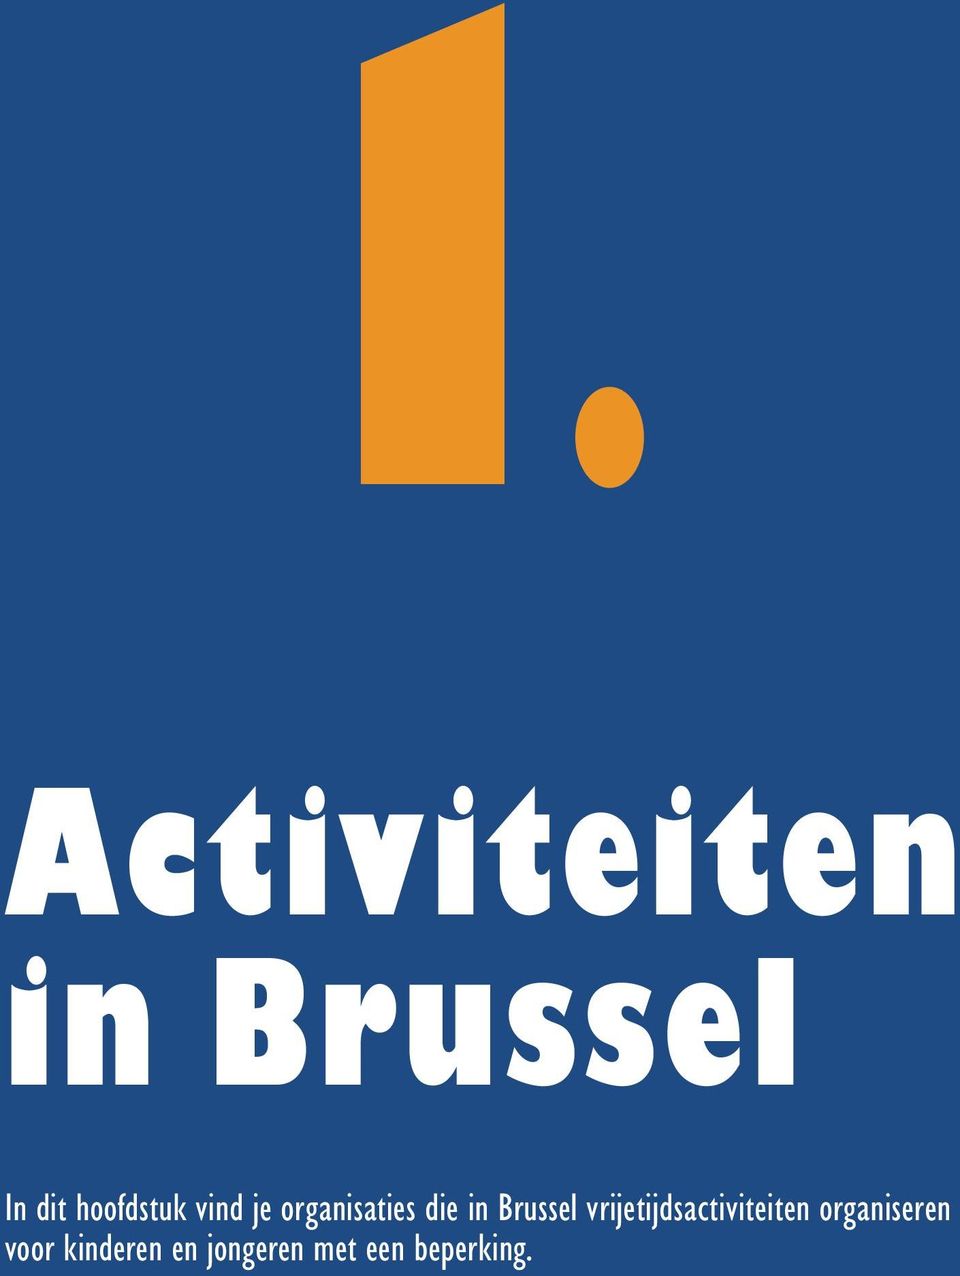 Brussel vrijetijdsactiviteiten